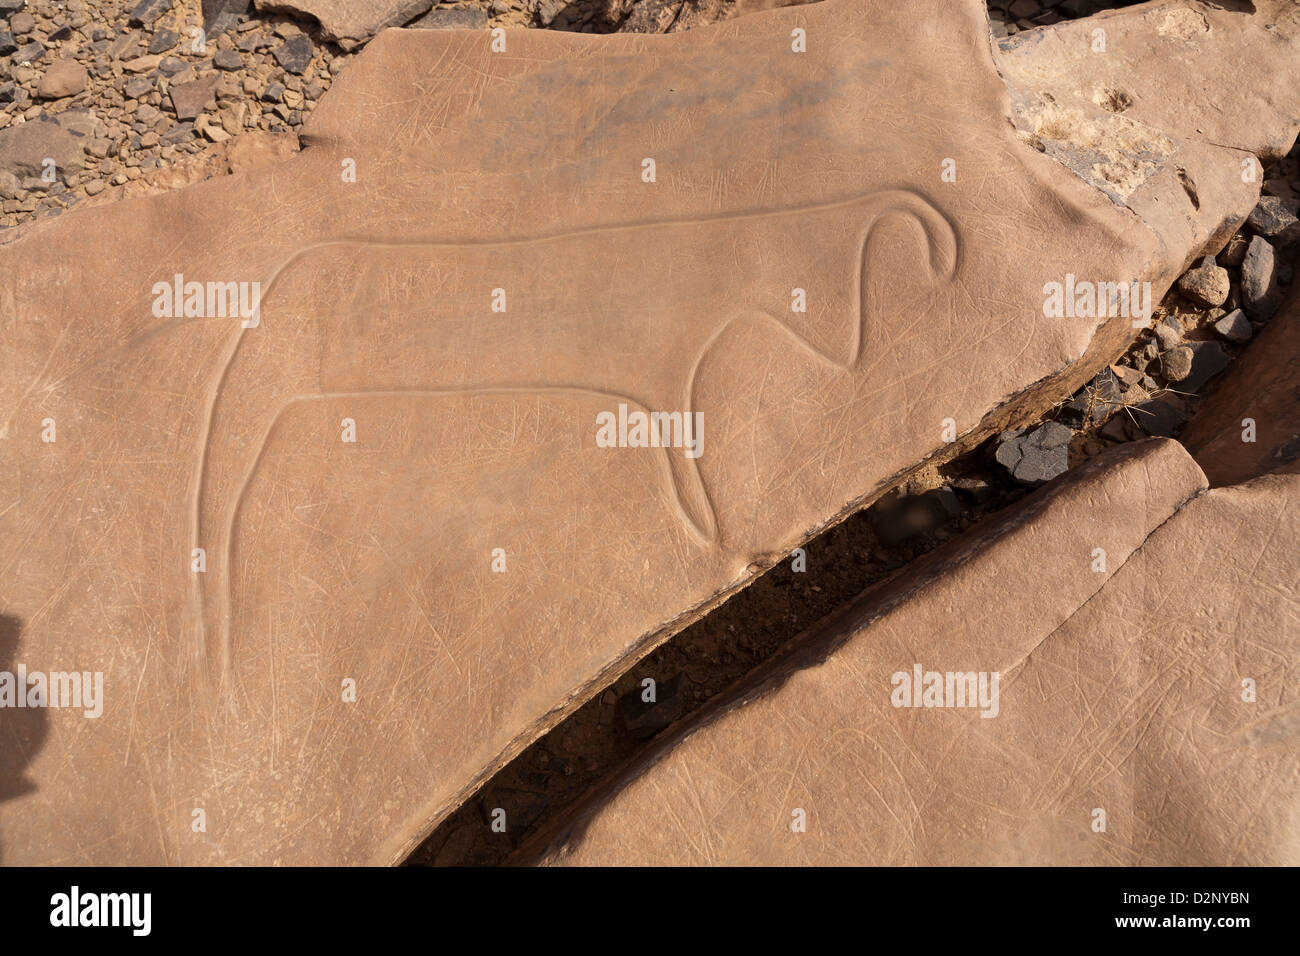 Sito d'arte rupestre preistorica Ait Ouazik, Marocco, Nord Africa Foto Stock